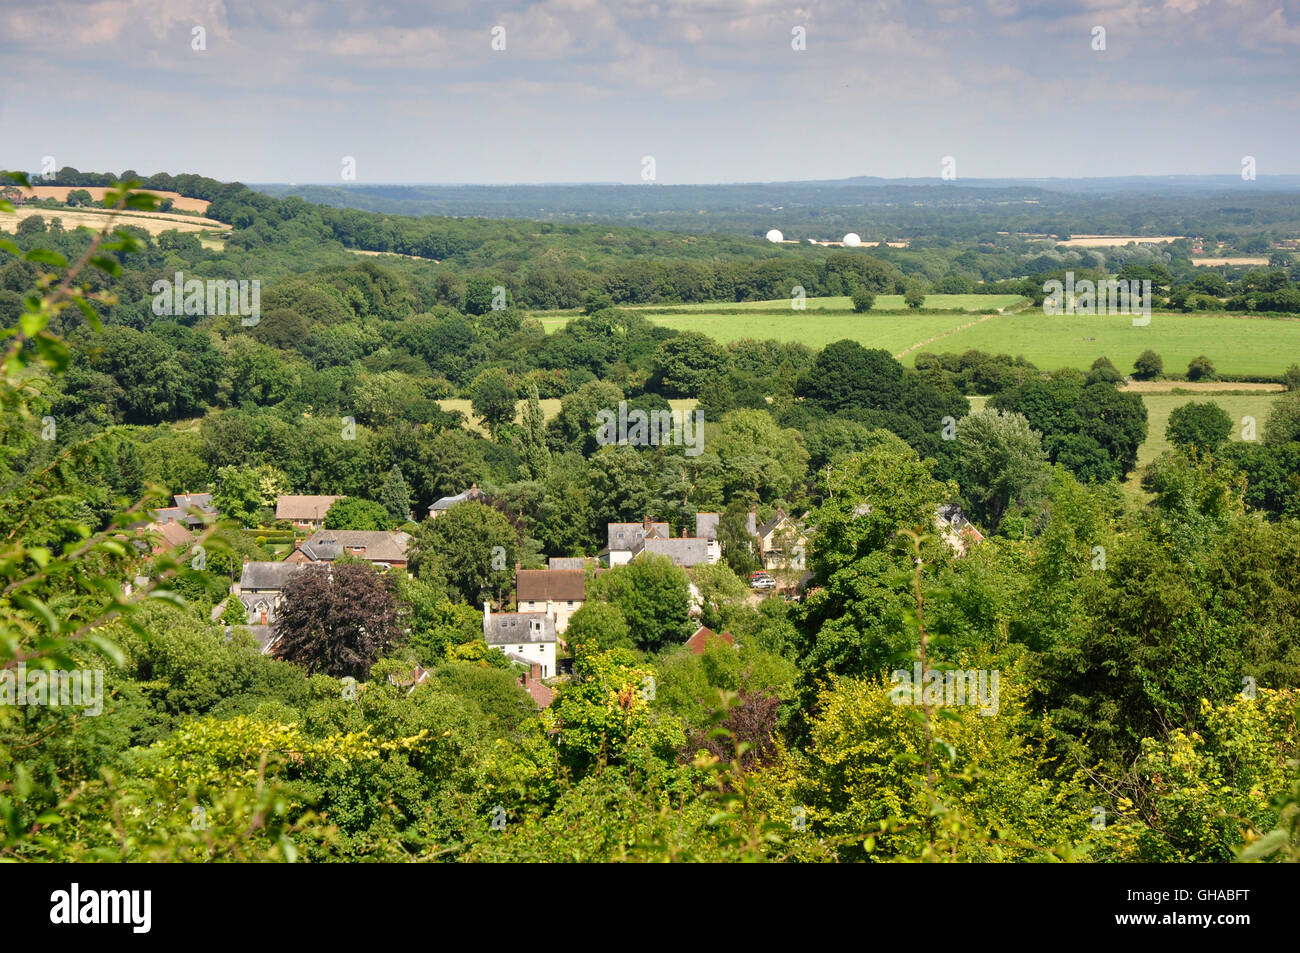 Hampshire - vue sur les toits du village Selborne - nichée dans les arbres matures en plein été, le soleil chaud - feuille Banque D'Images